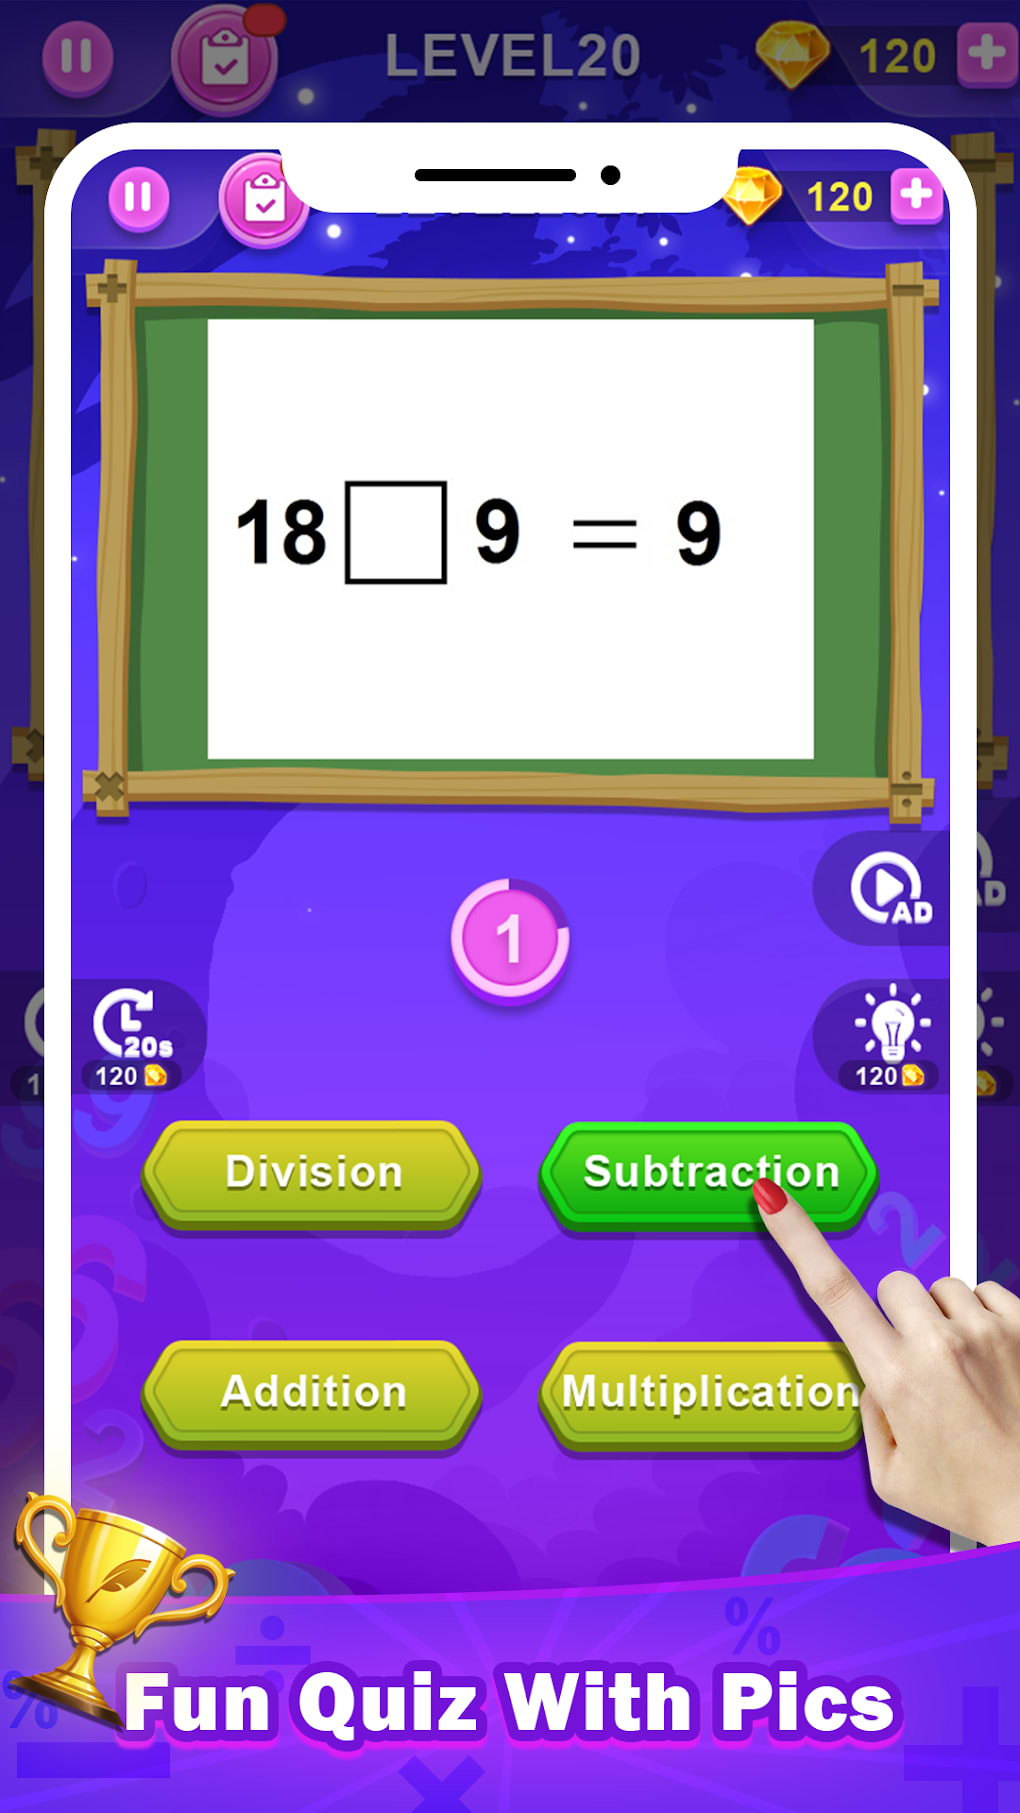 Download do APK de Quiz Matemática para Android